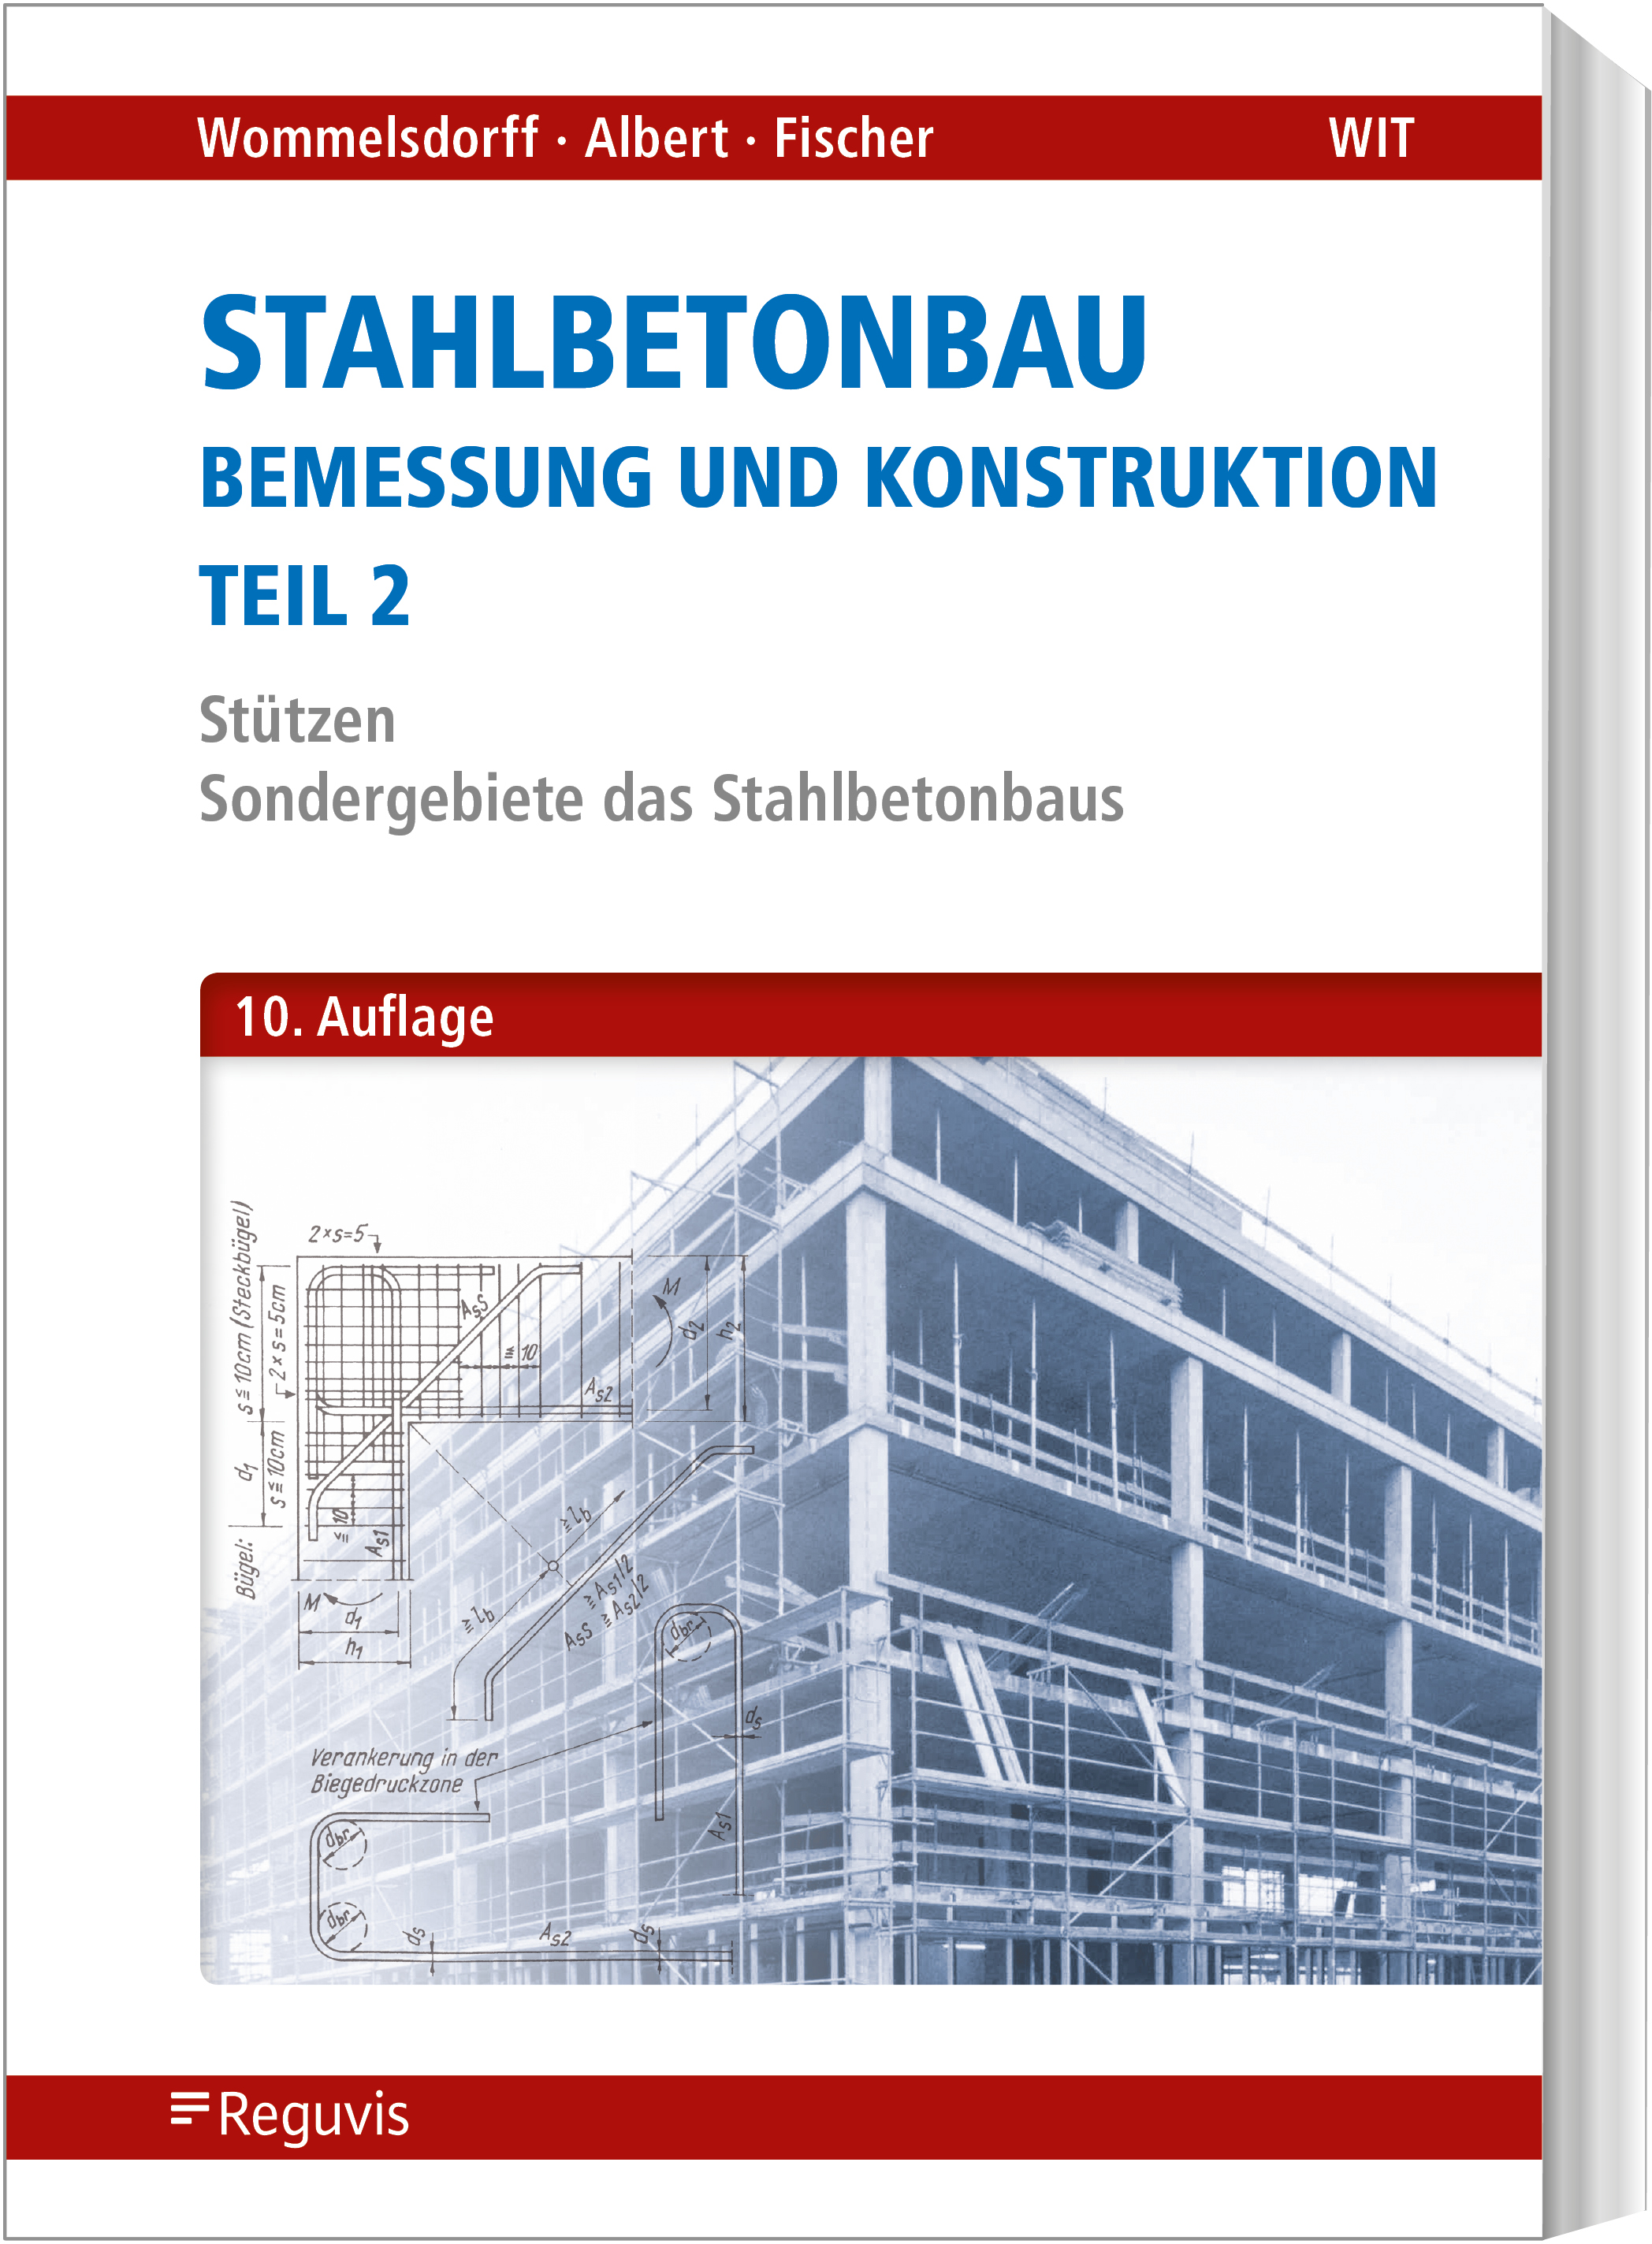 Stahlbetonbau - Bemessung und Konstruktion - Teil 2